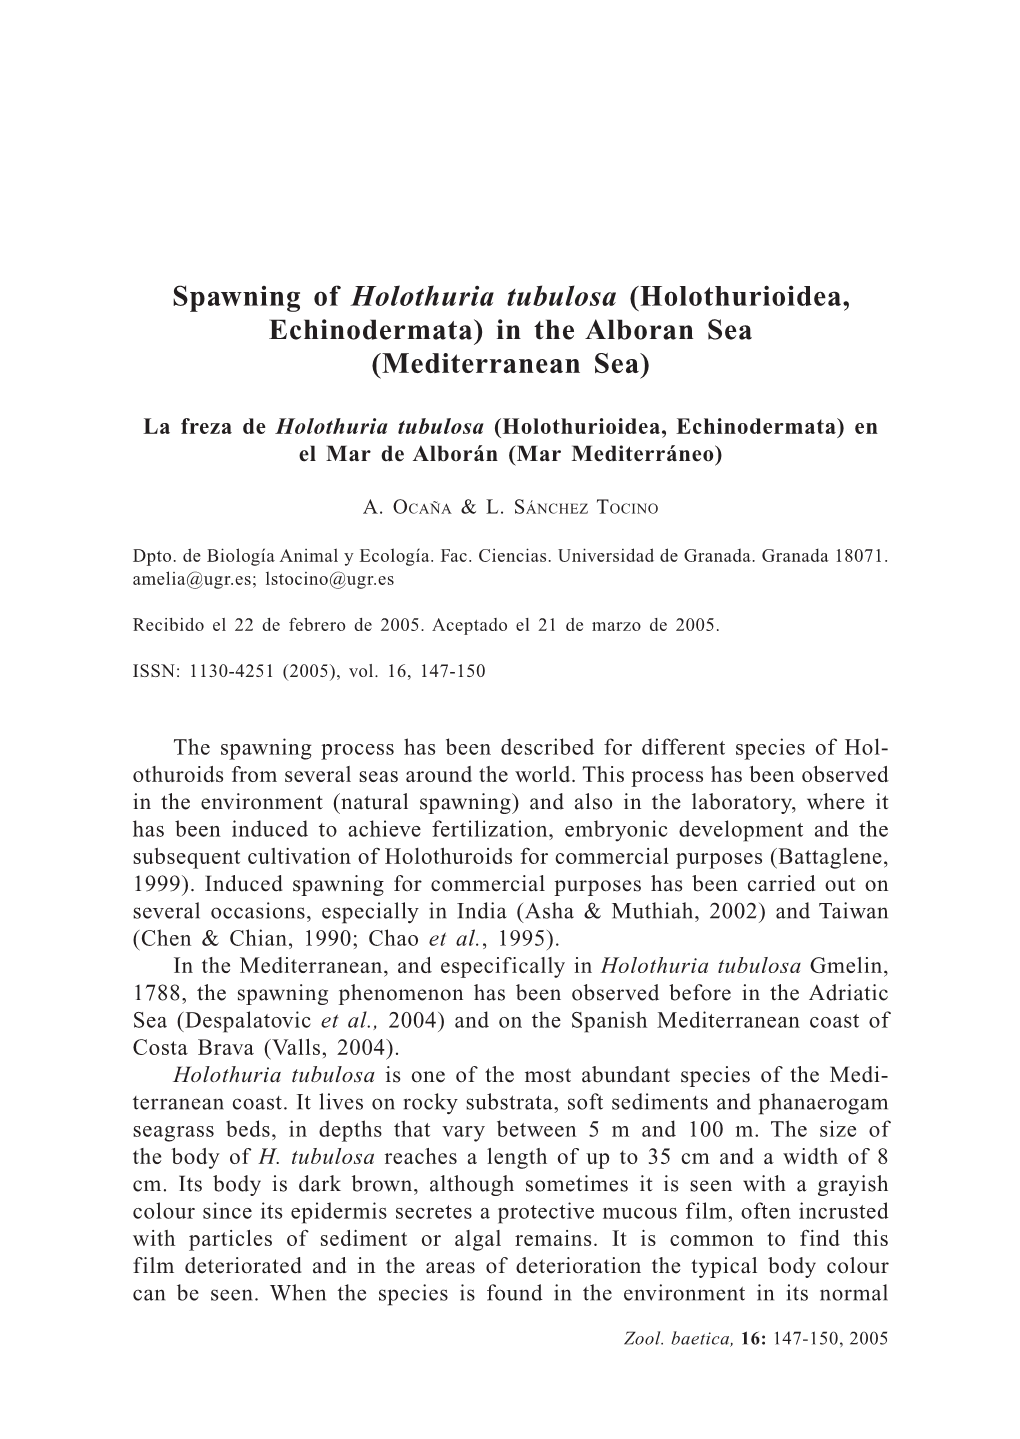 Spawning of Holothuria Tubulosa (Holothurioidea, Echinodermata) in the Alboran Sea (Mediterranean Sea)